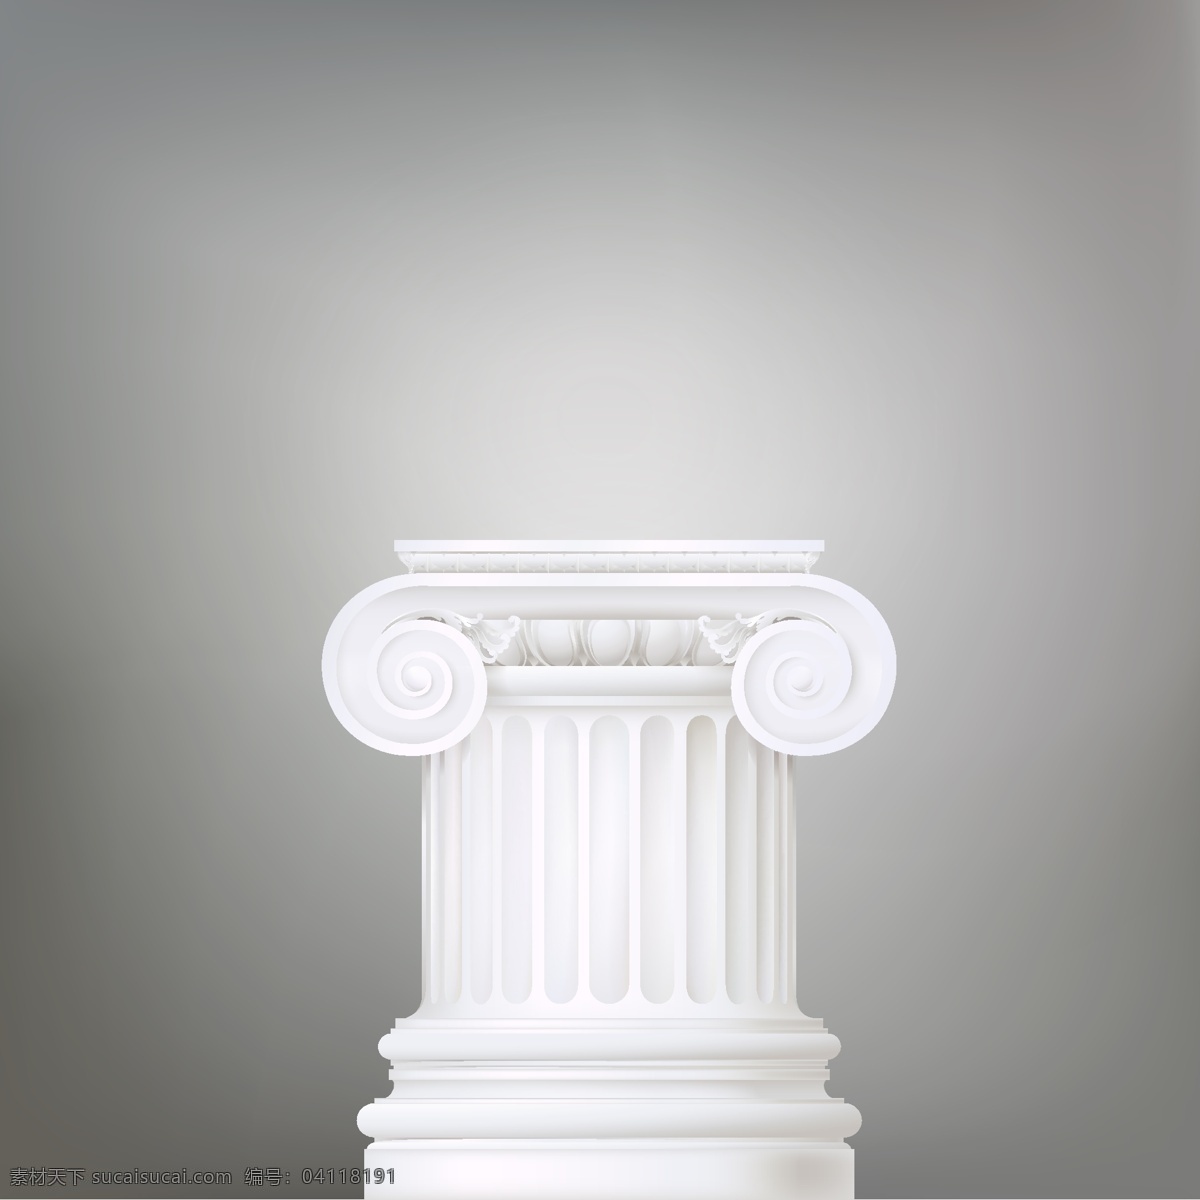 洁白 光滑 古罗马 柱 洁白光滑 古罗马柱 柱子 建筑 生活百科 矢量素材 灰色